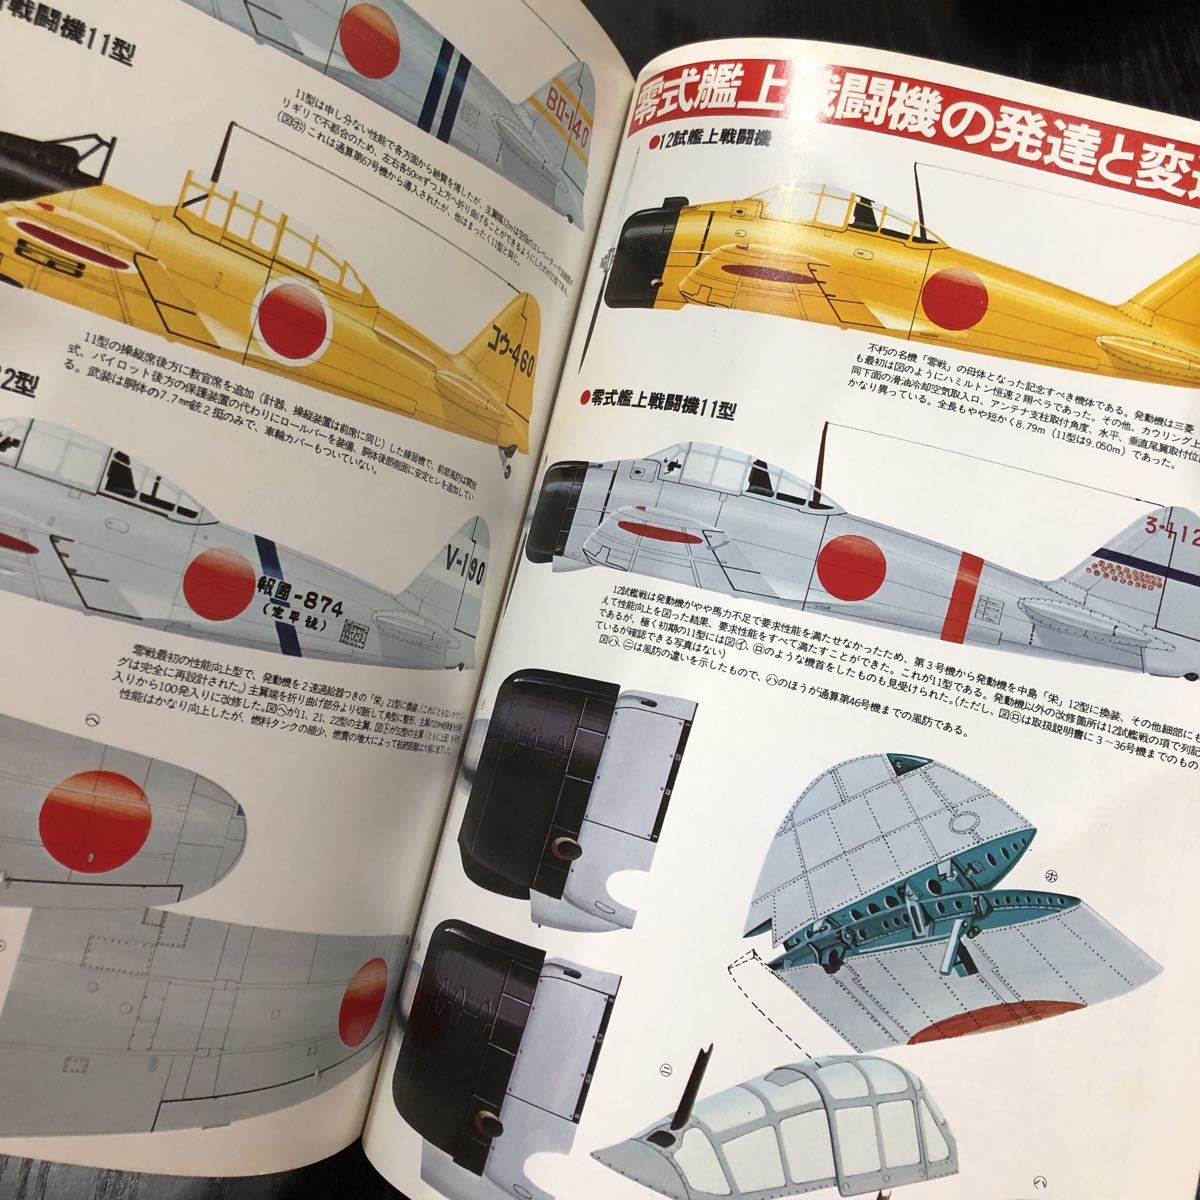 イ80 零戦&第2次大戦機 ワイルドムック22 昭和53年9月発行 海軍機 モデルアート 水上機 日本海軍 飛行機模型 最終兵器 戦争 ジェット機_画像5